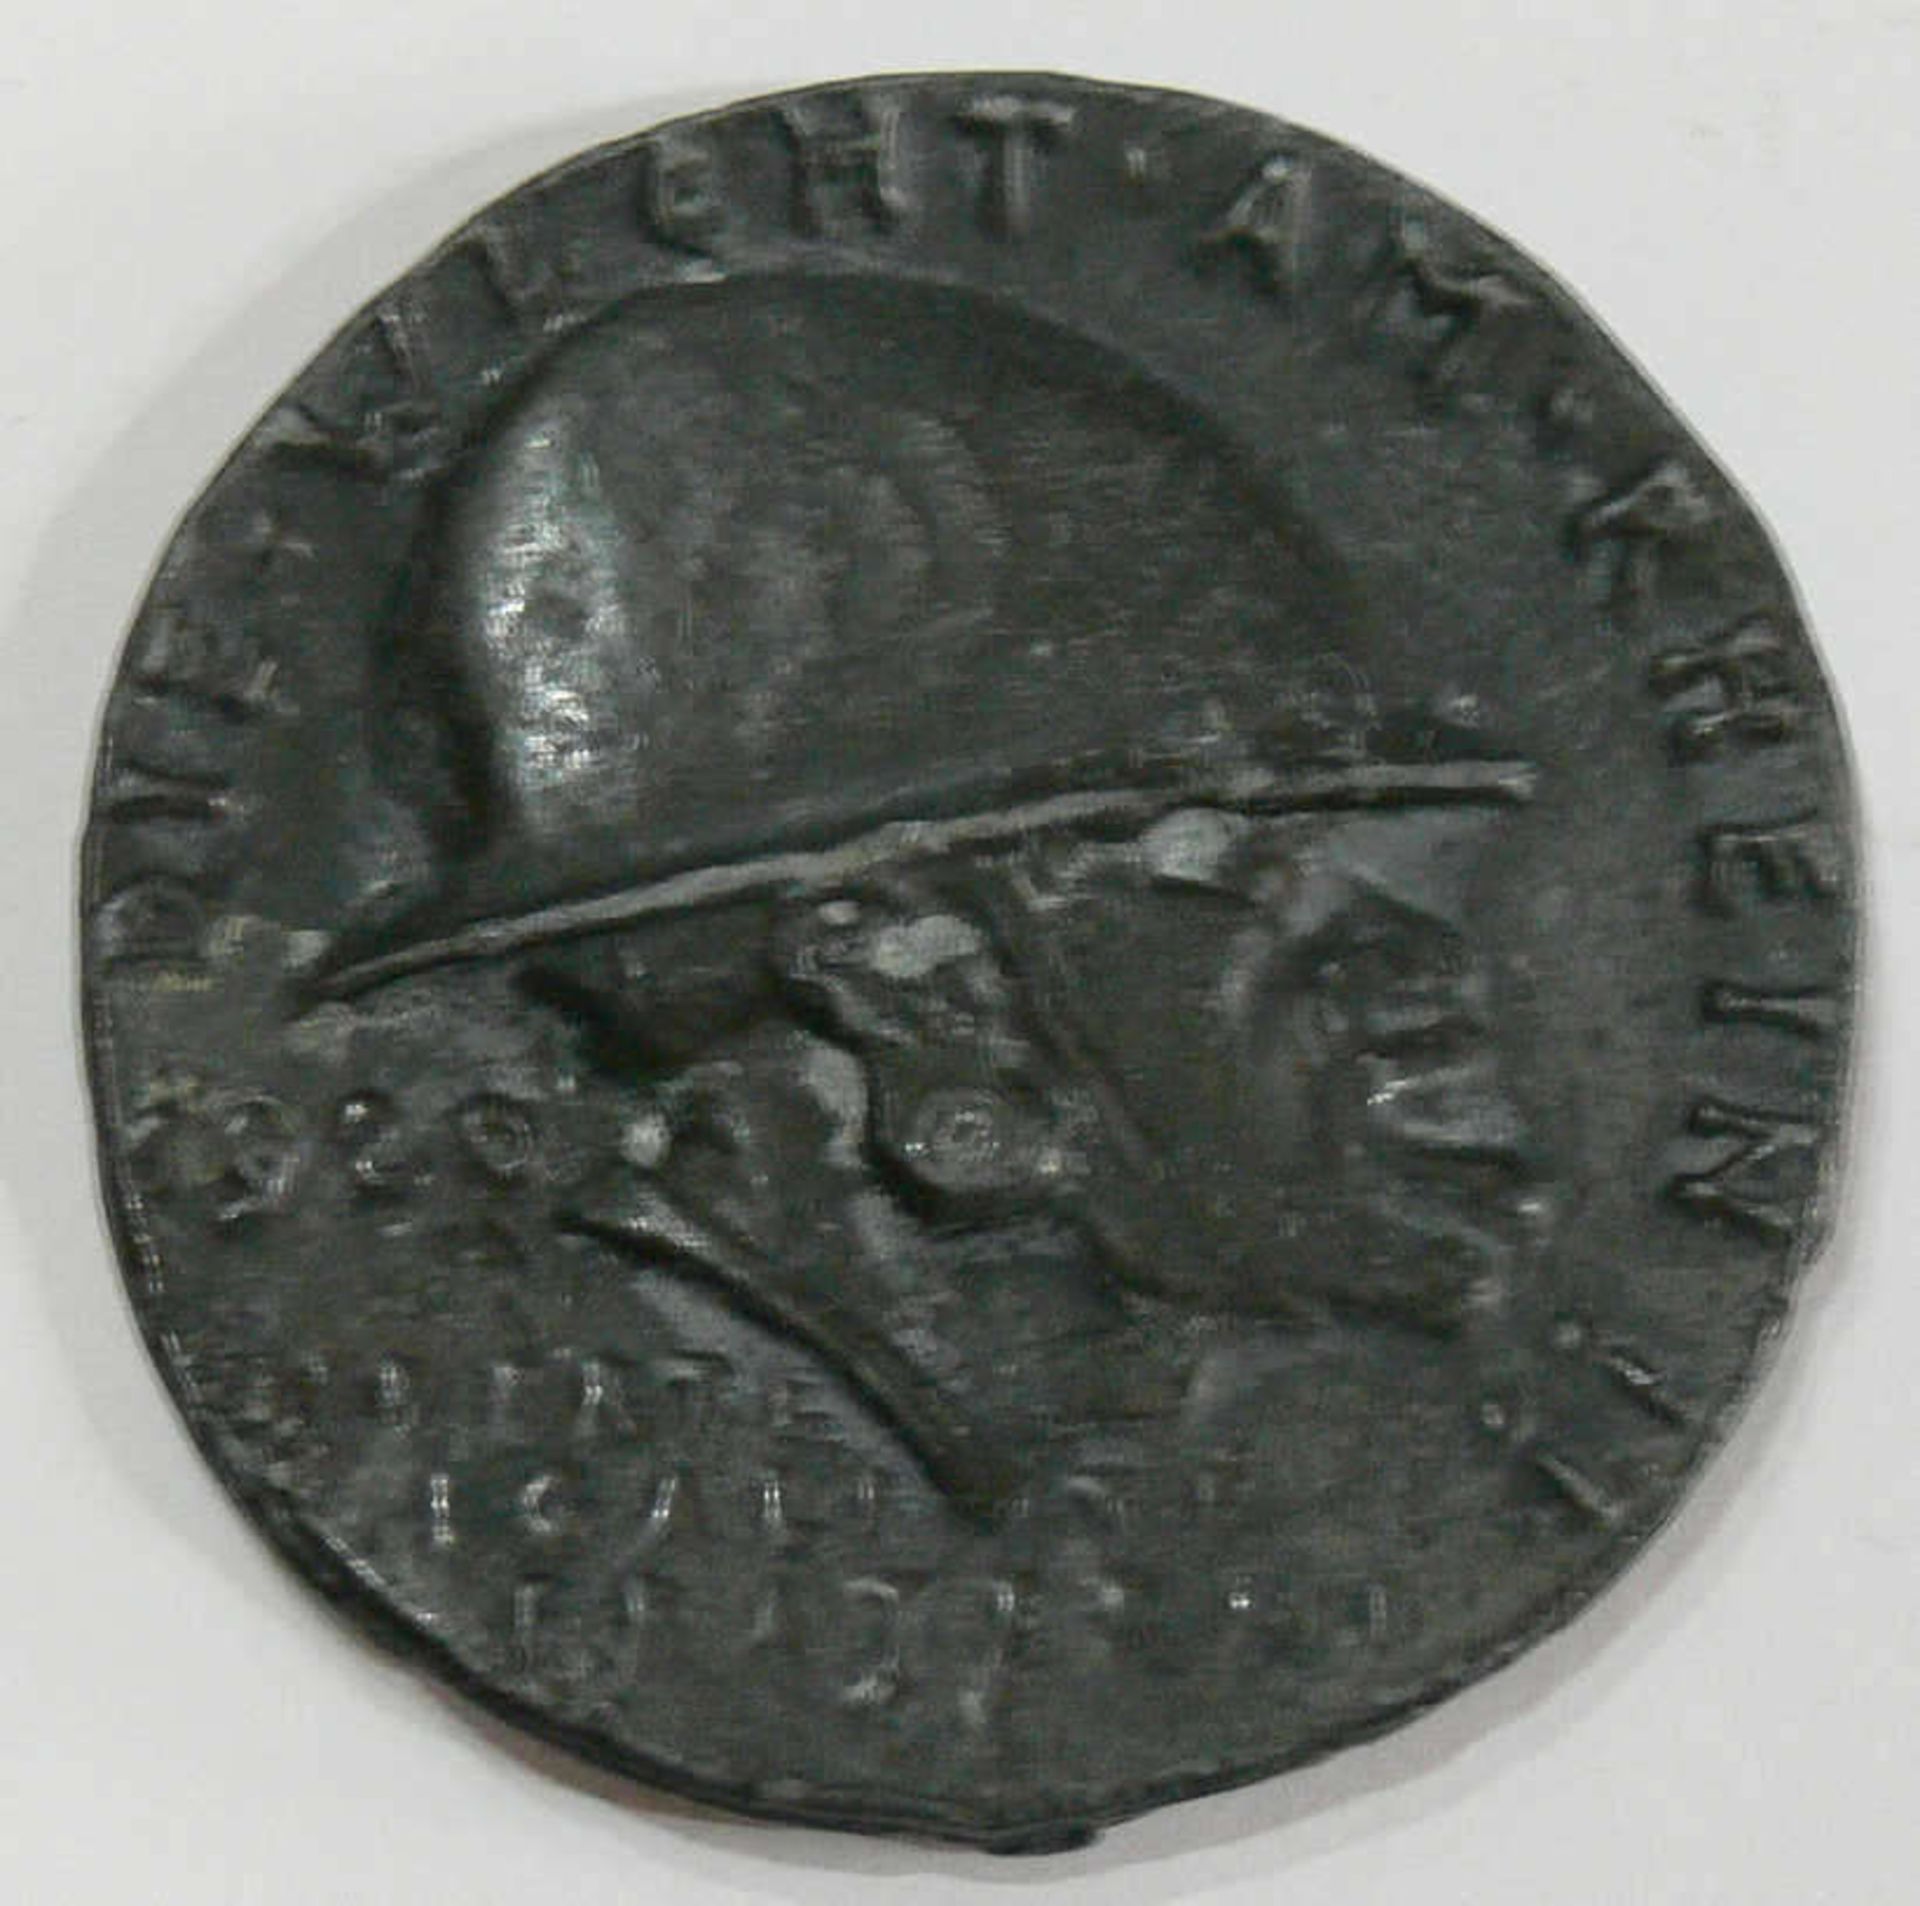 Medaille 1920 von Karl Götz "Die Wacht am Rhein". Rückseite: "Die schwarze Schande". Bronzeguss.